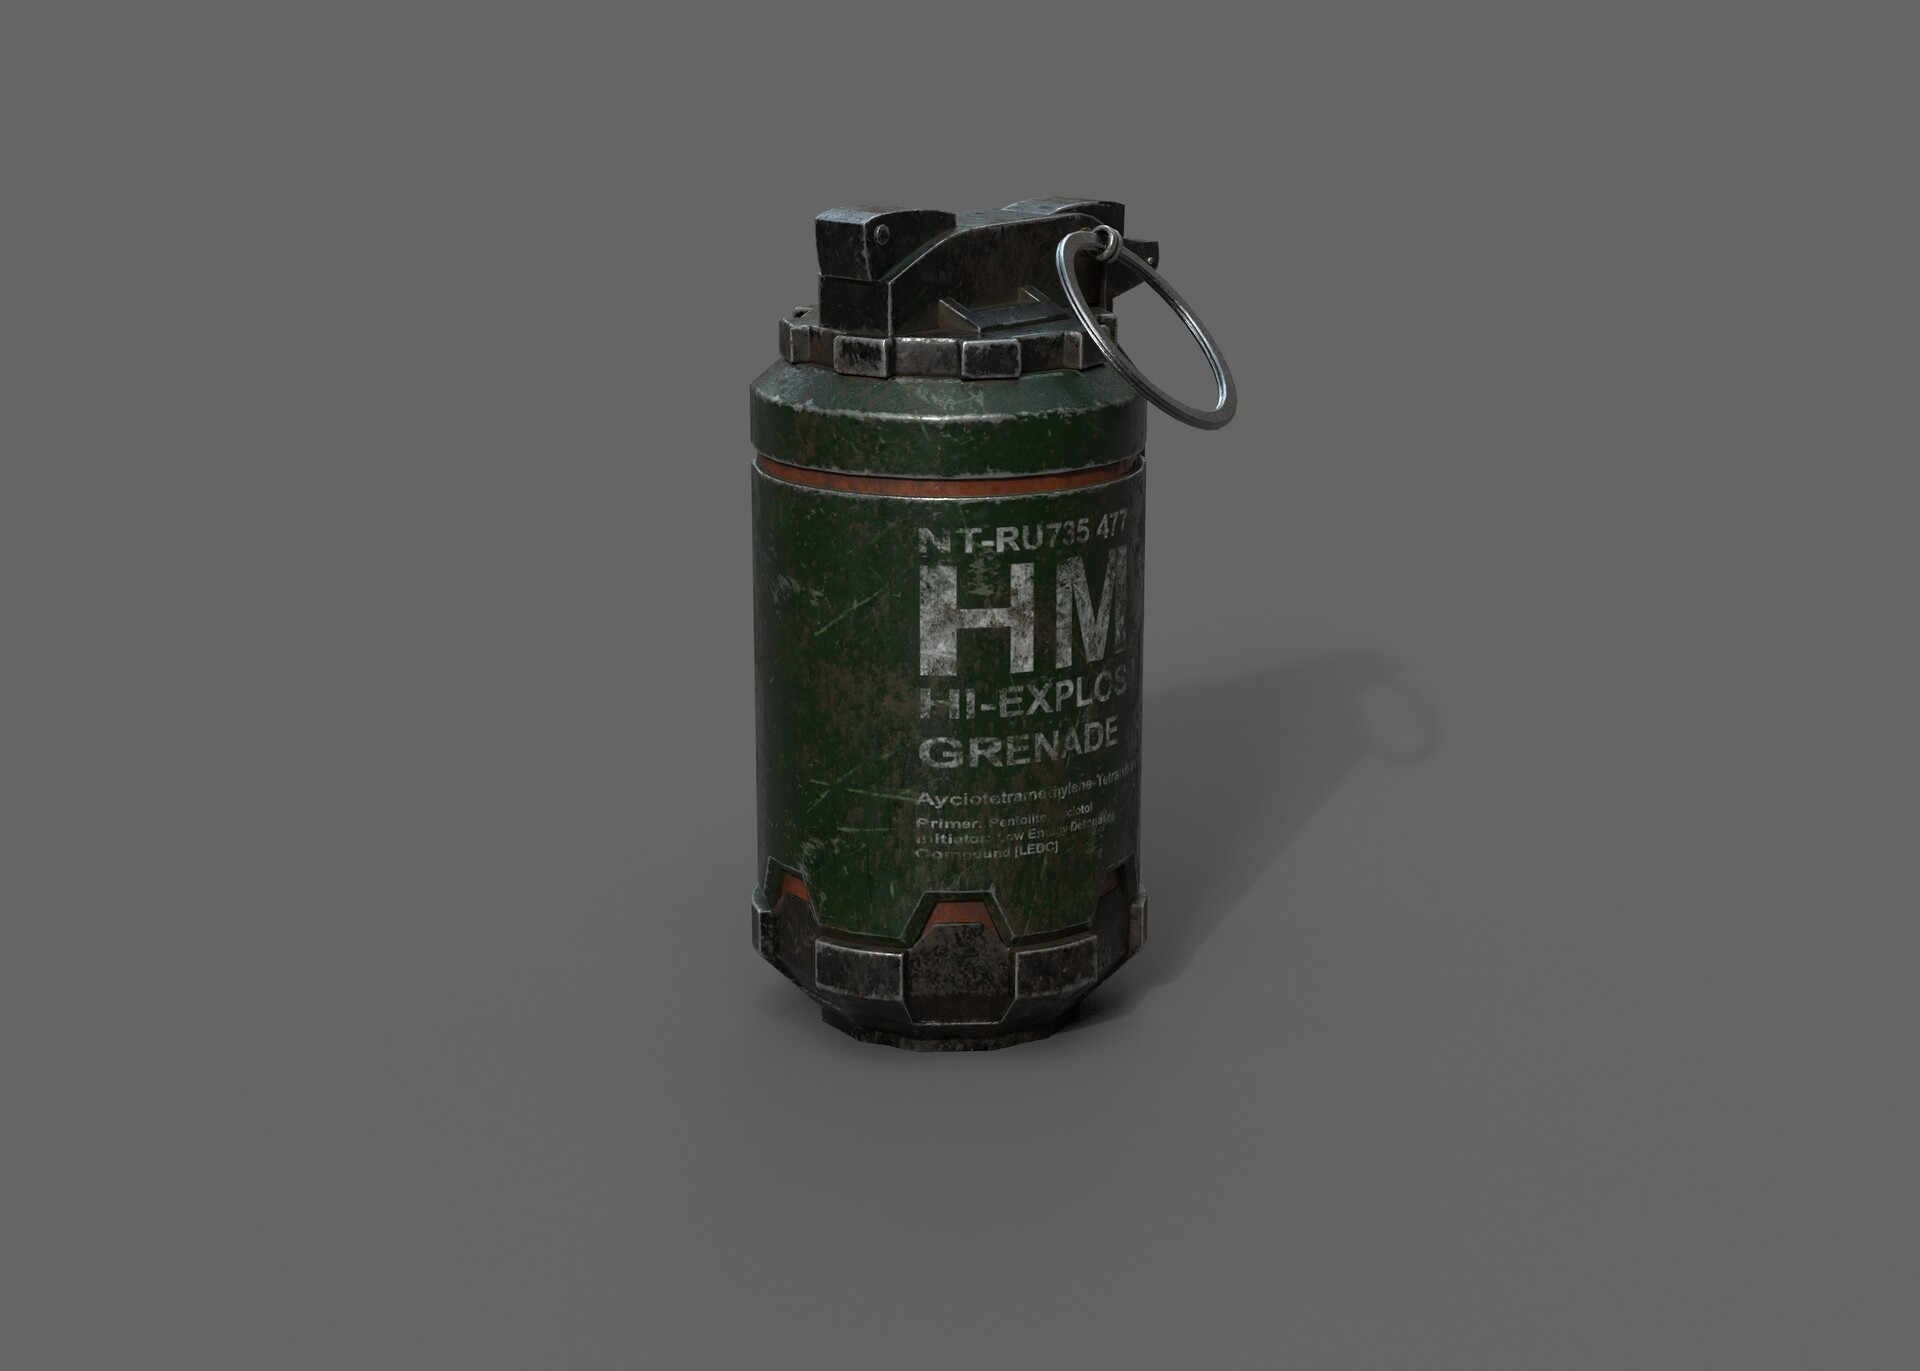 ArtStation - Grenade concept